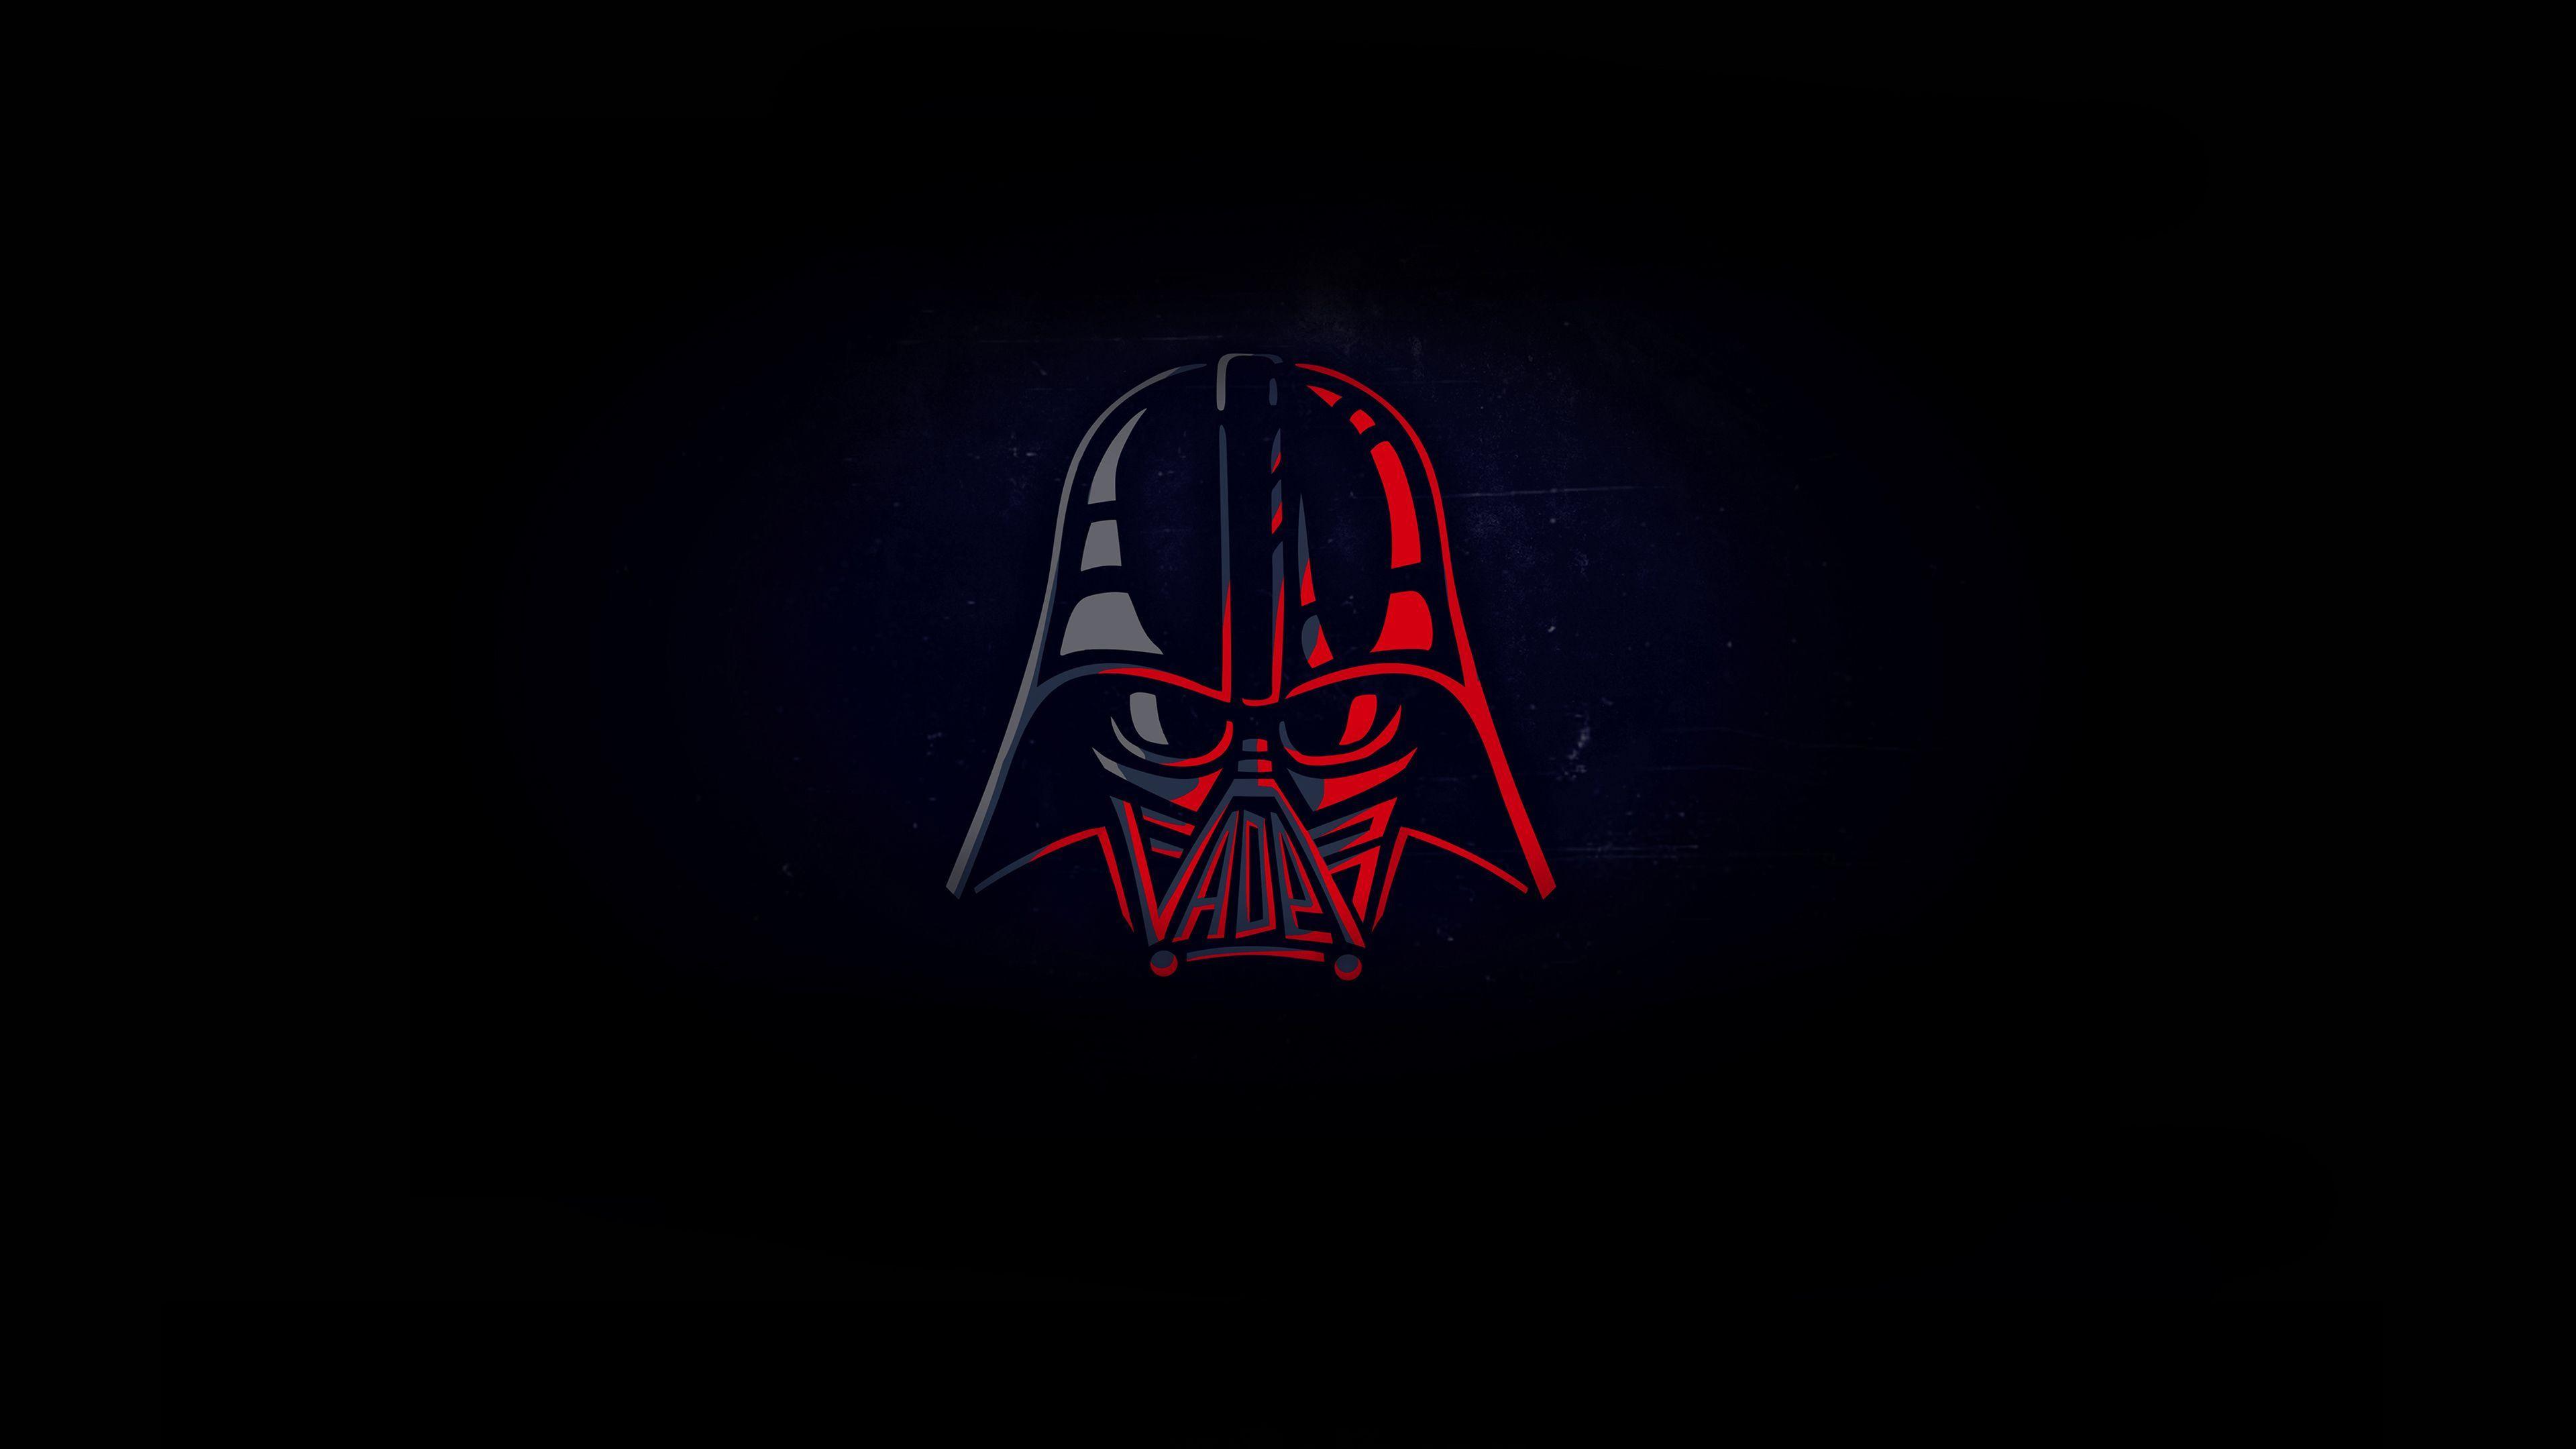 Hình nền chiến tranh giữa các vì sao 3840x2160 Darth Vader Minimal 4k, hình nền tối giản, wallpap chủ nghĩa tối giản.  Hình nền Darth vader, Hình nền chiến tranh giữa các vì sao, Hình nền các nhân vật trong Chiến tranh giữa các vì sao